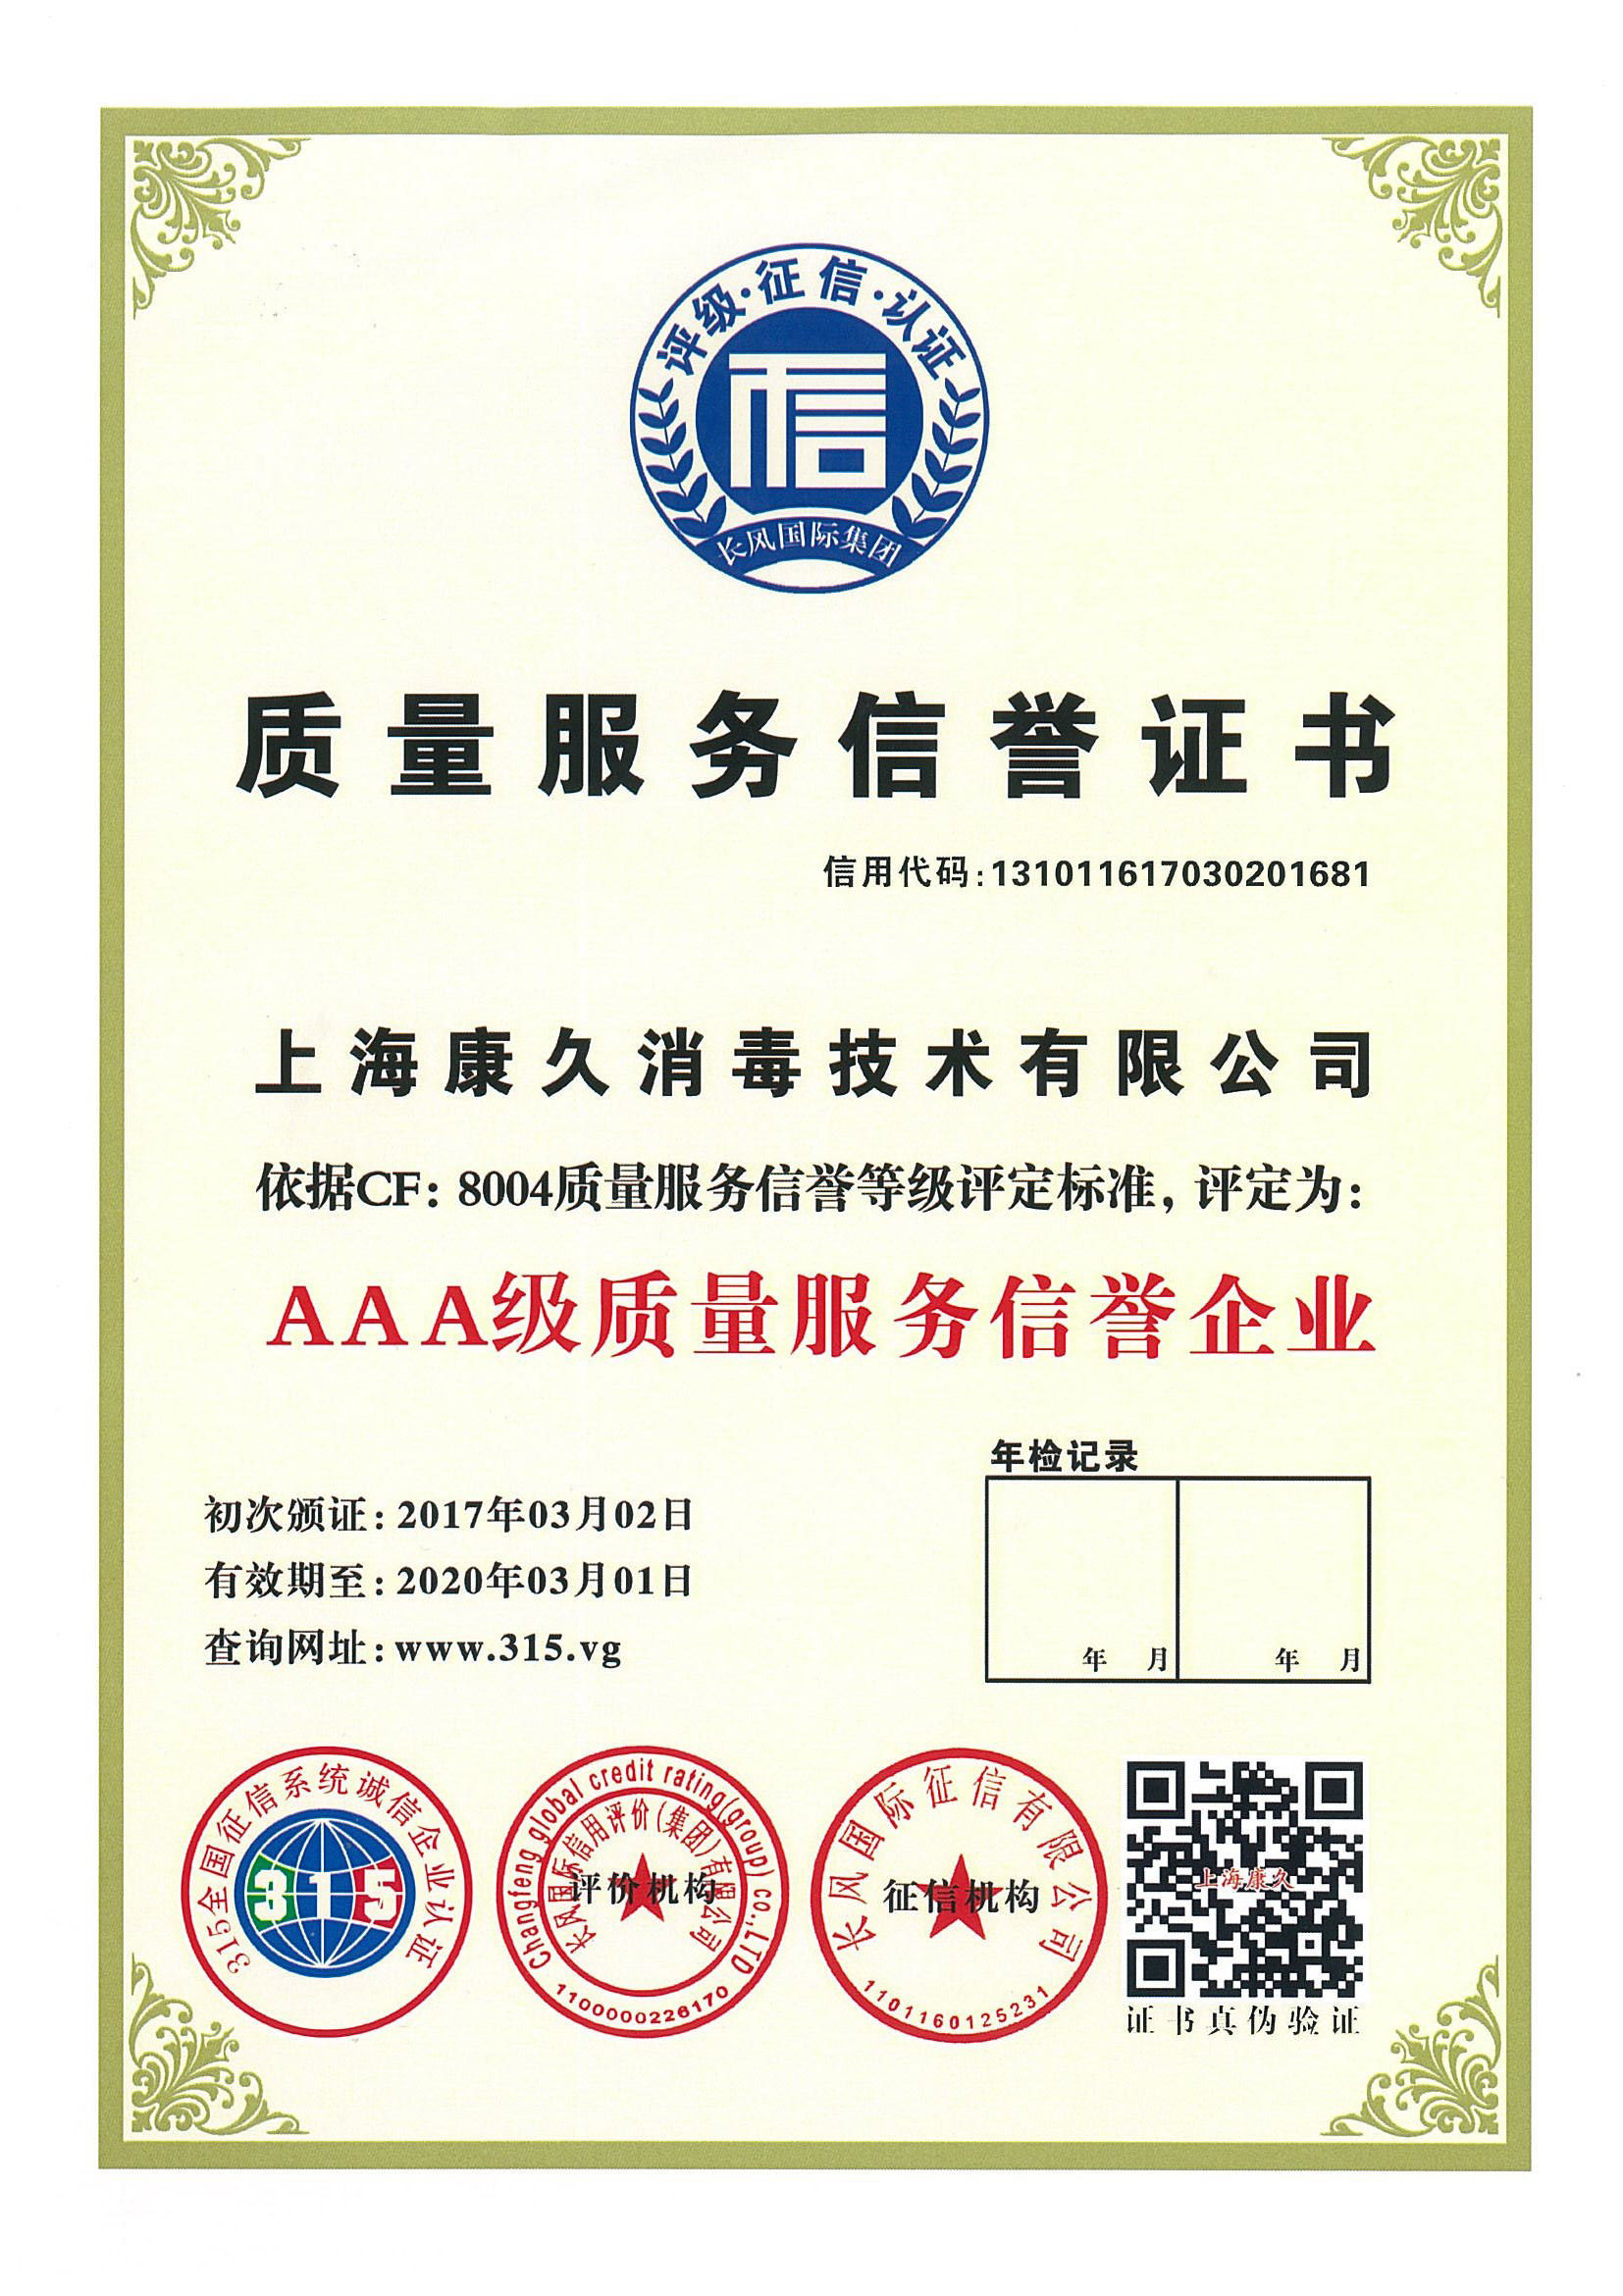 “上海质量服务信誉证书